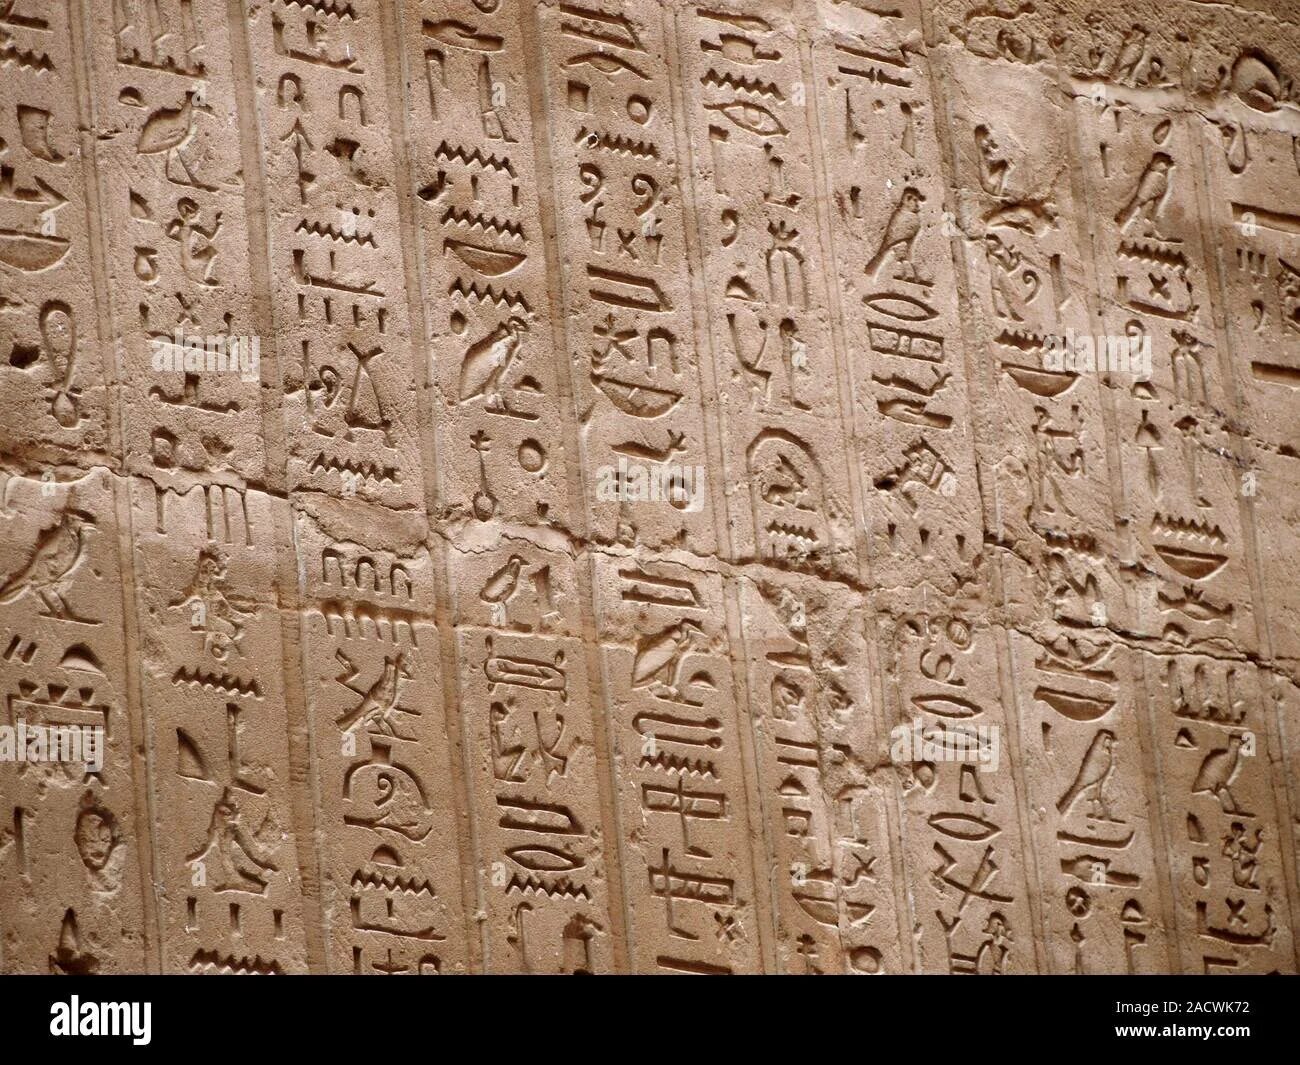 Создание первого алфавита египет. Идеограммы древнего Египта. Иероглифическая письменность Египта. Иероглифика древнего Египта. Дешифровка египетских иероглифов.